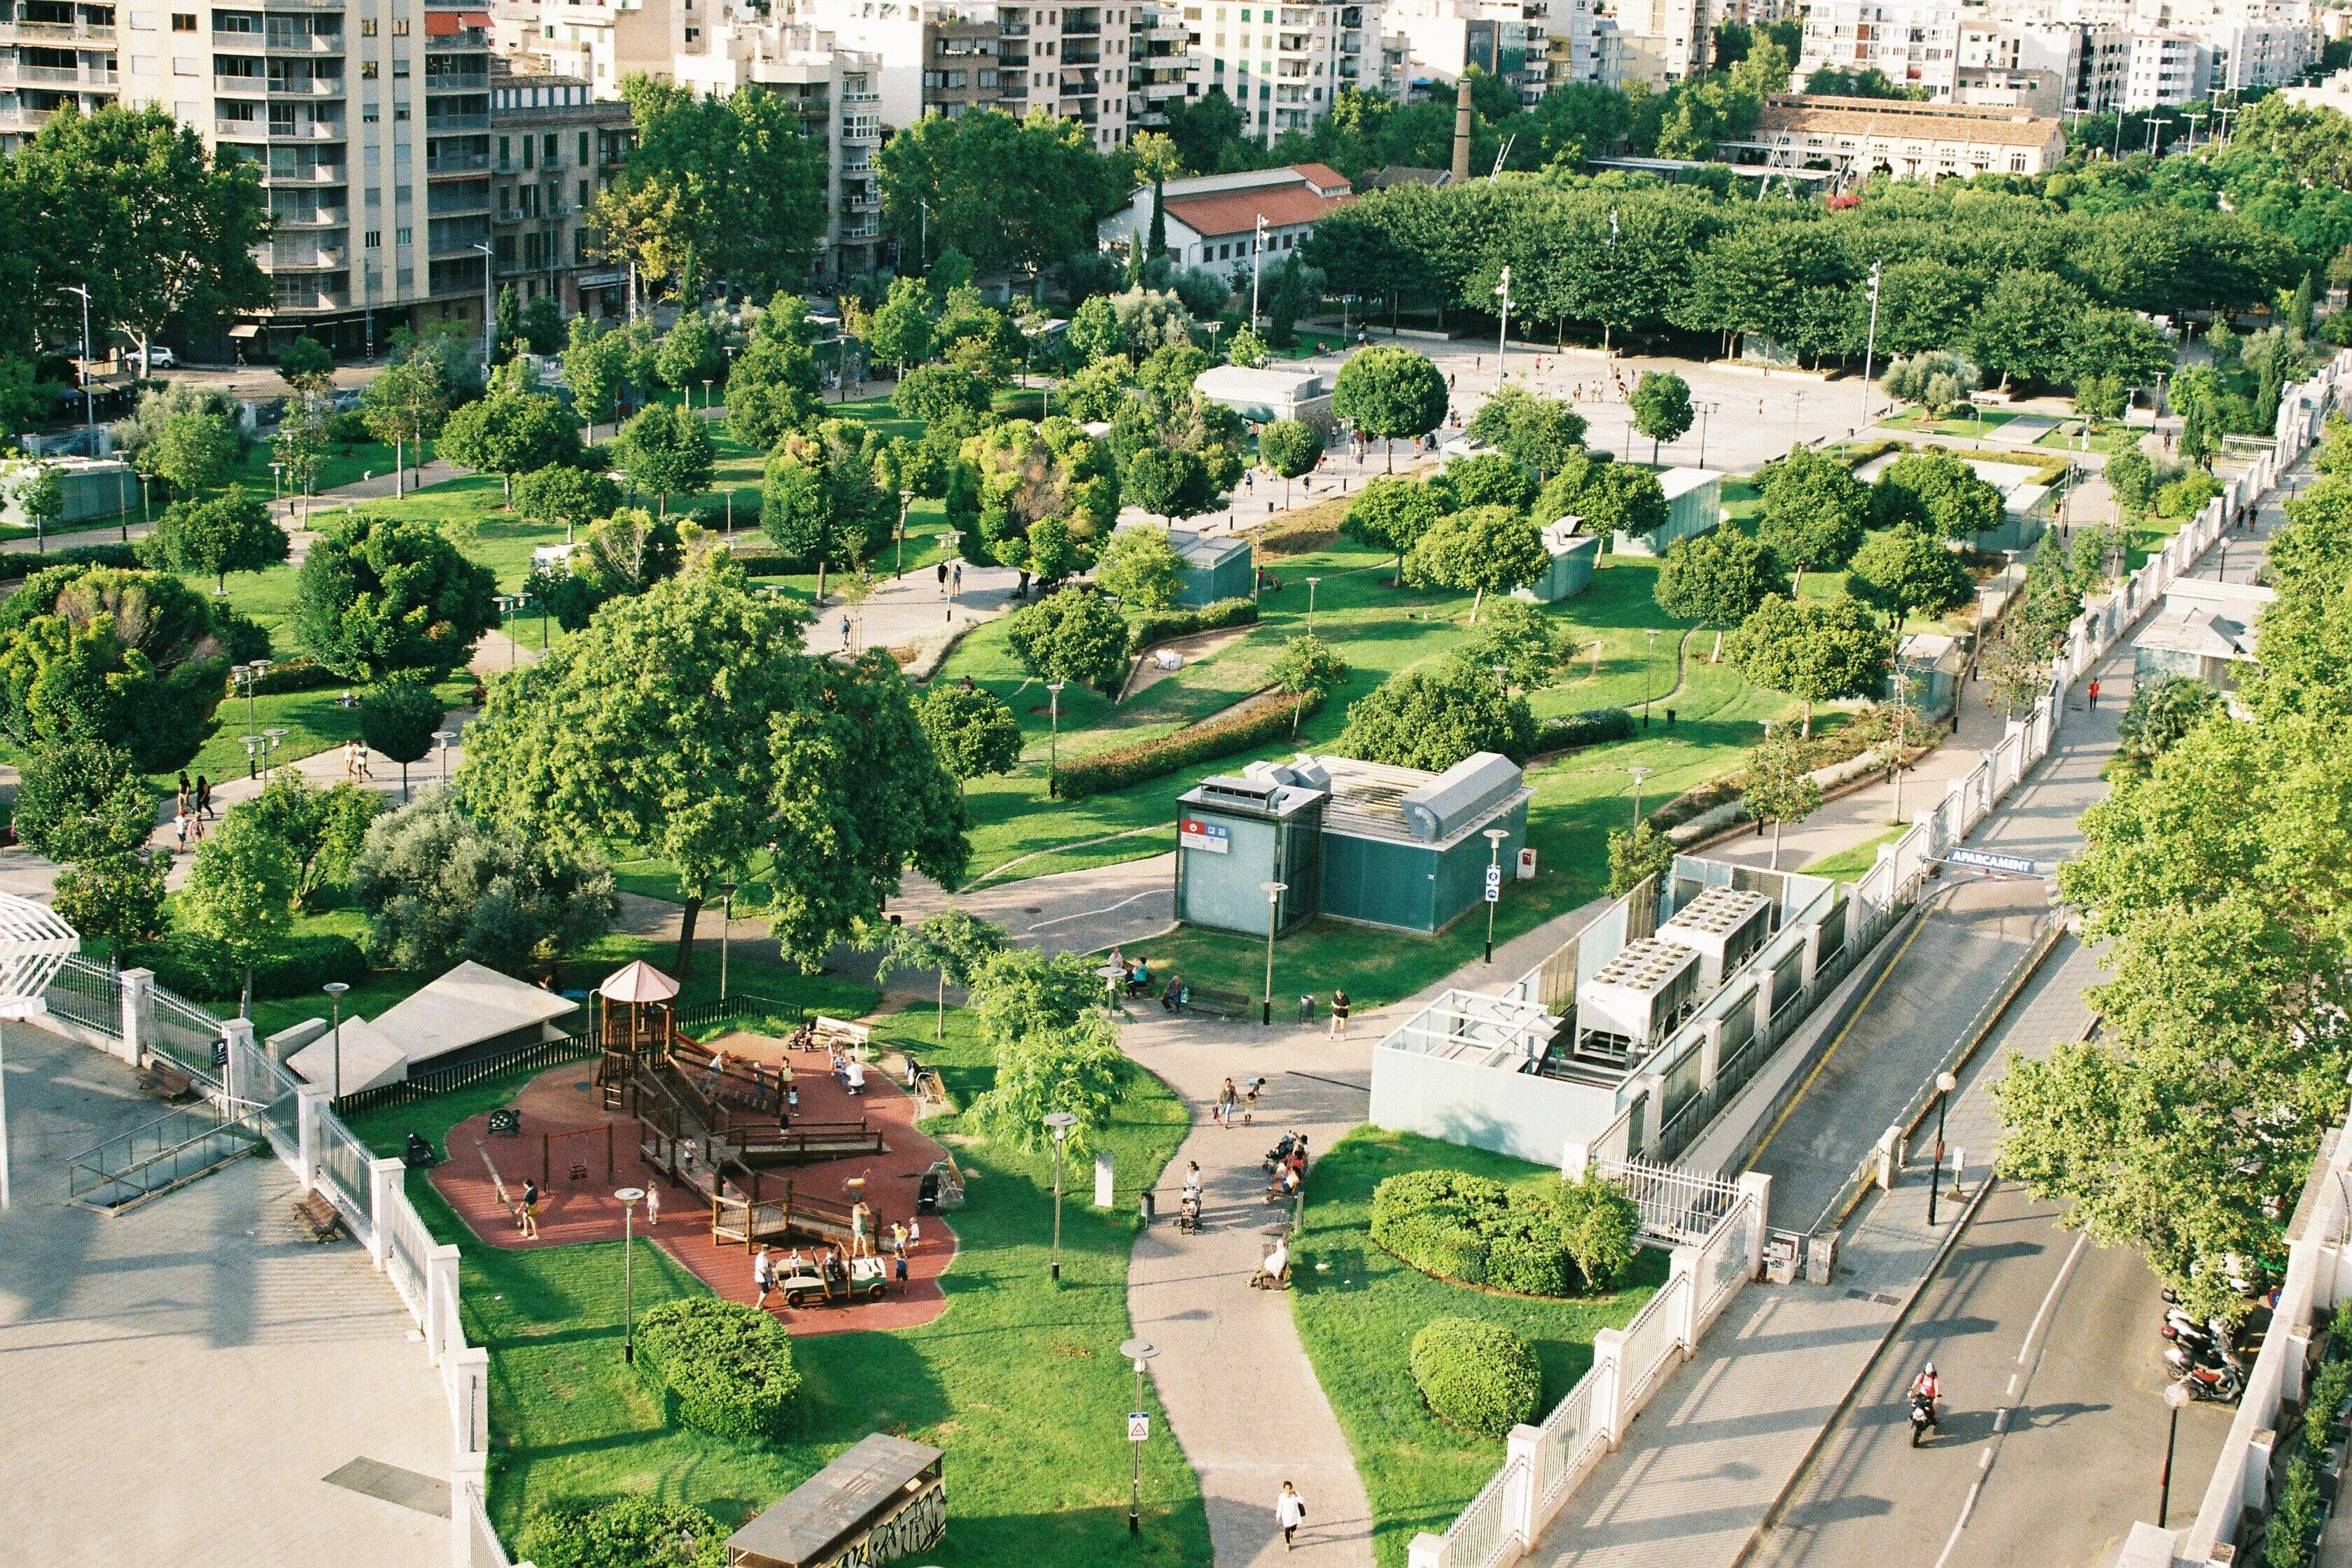 Grünanlage innerhalb einer Stadt